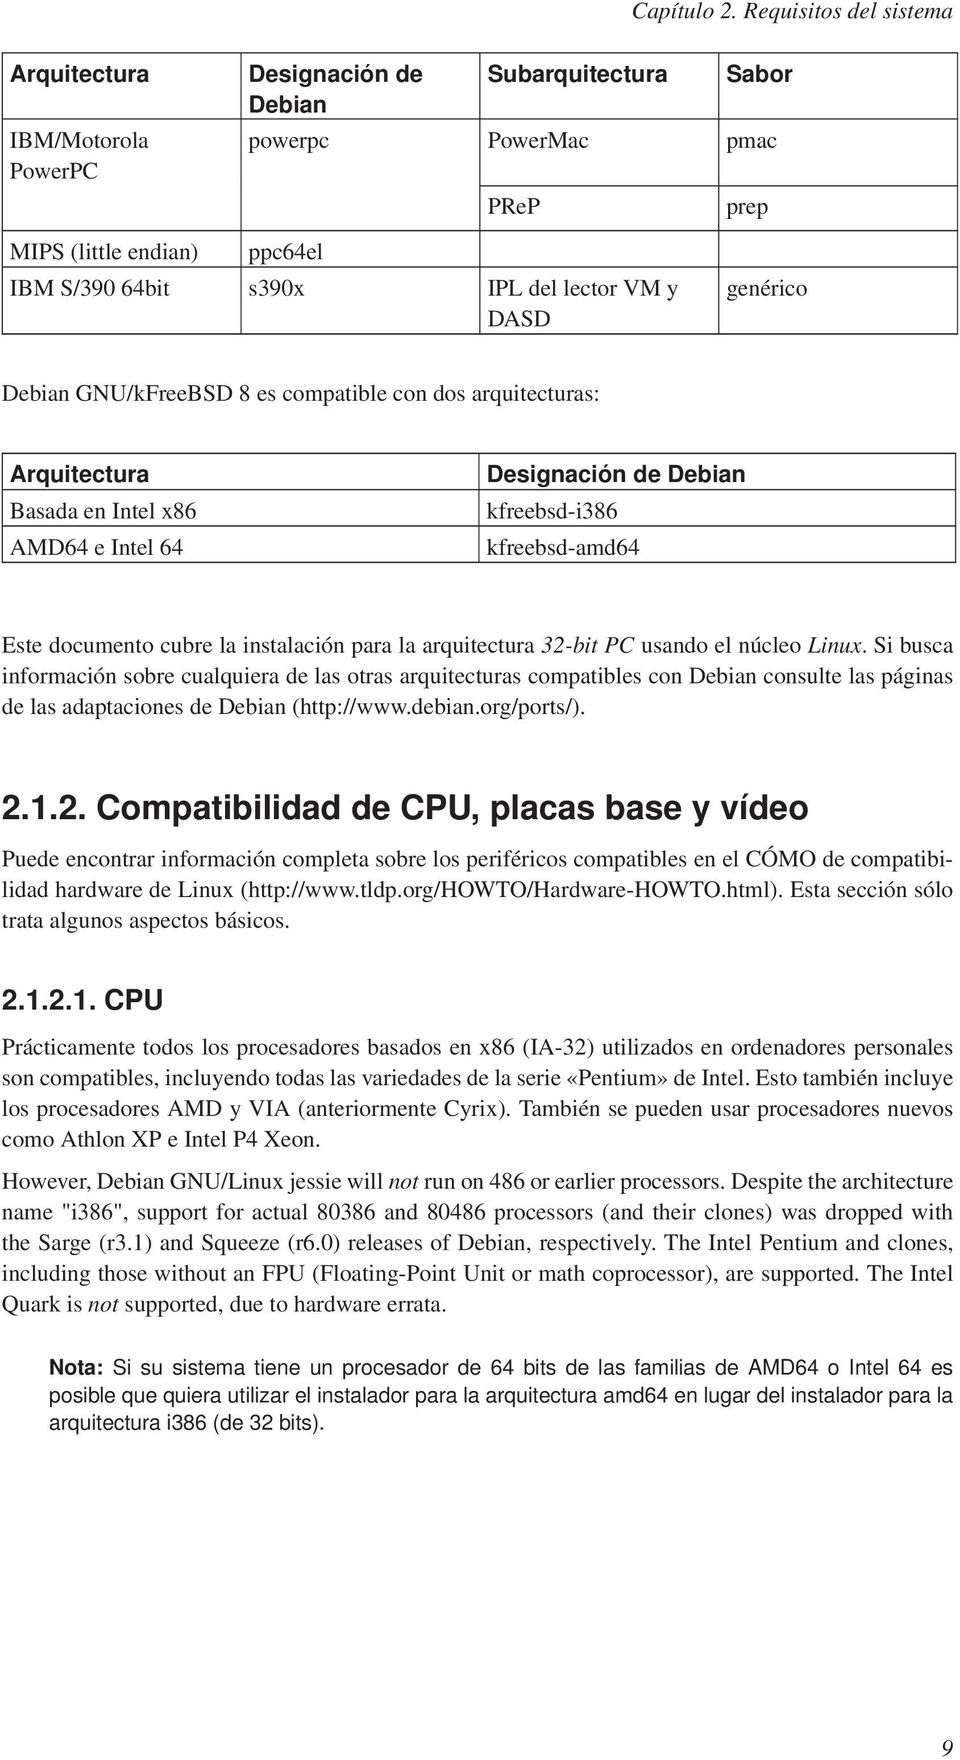 VM y DASD genérico Debian GNU/kFreeBSD 8 es compatible con dos arquitecturas: Arquitectura Basada en Intel x86 AMD64 e Intel 64 Designación de Debian kfreebsd-i386 kfreebsd-amd64 Este documento cubre